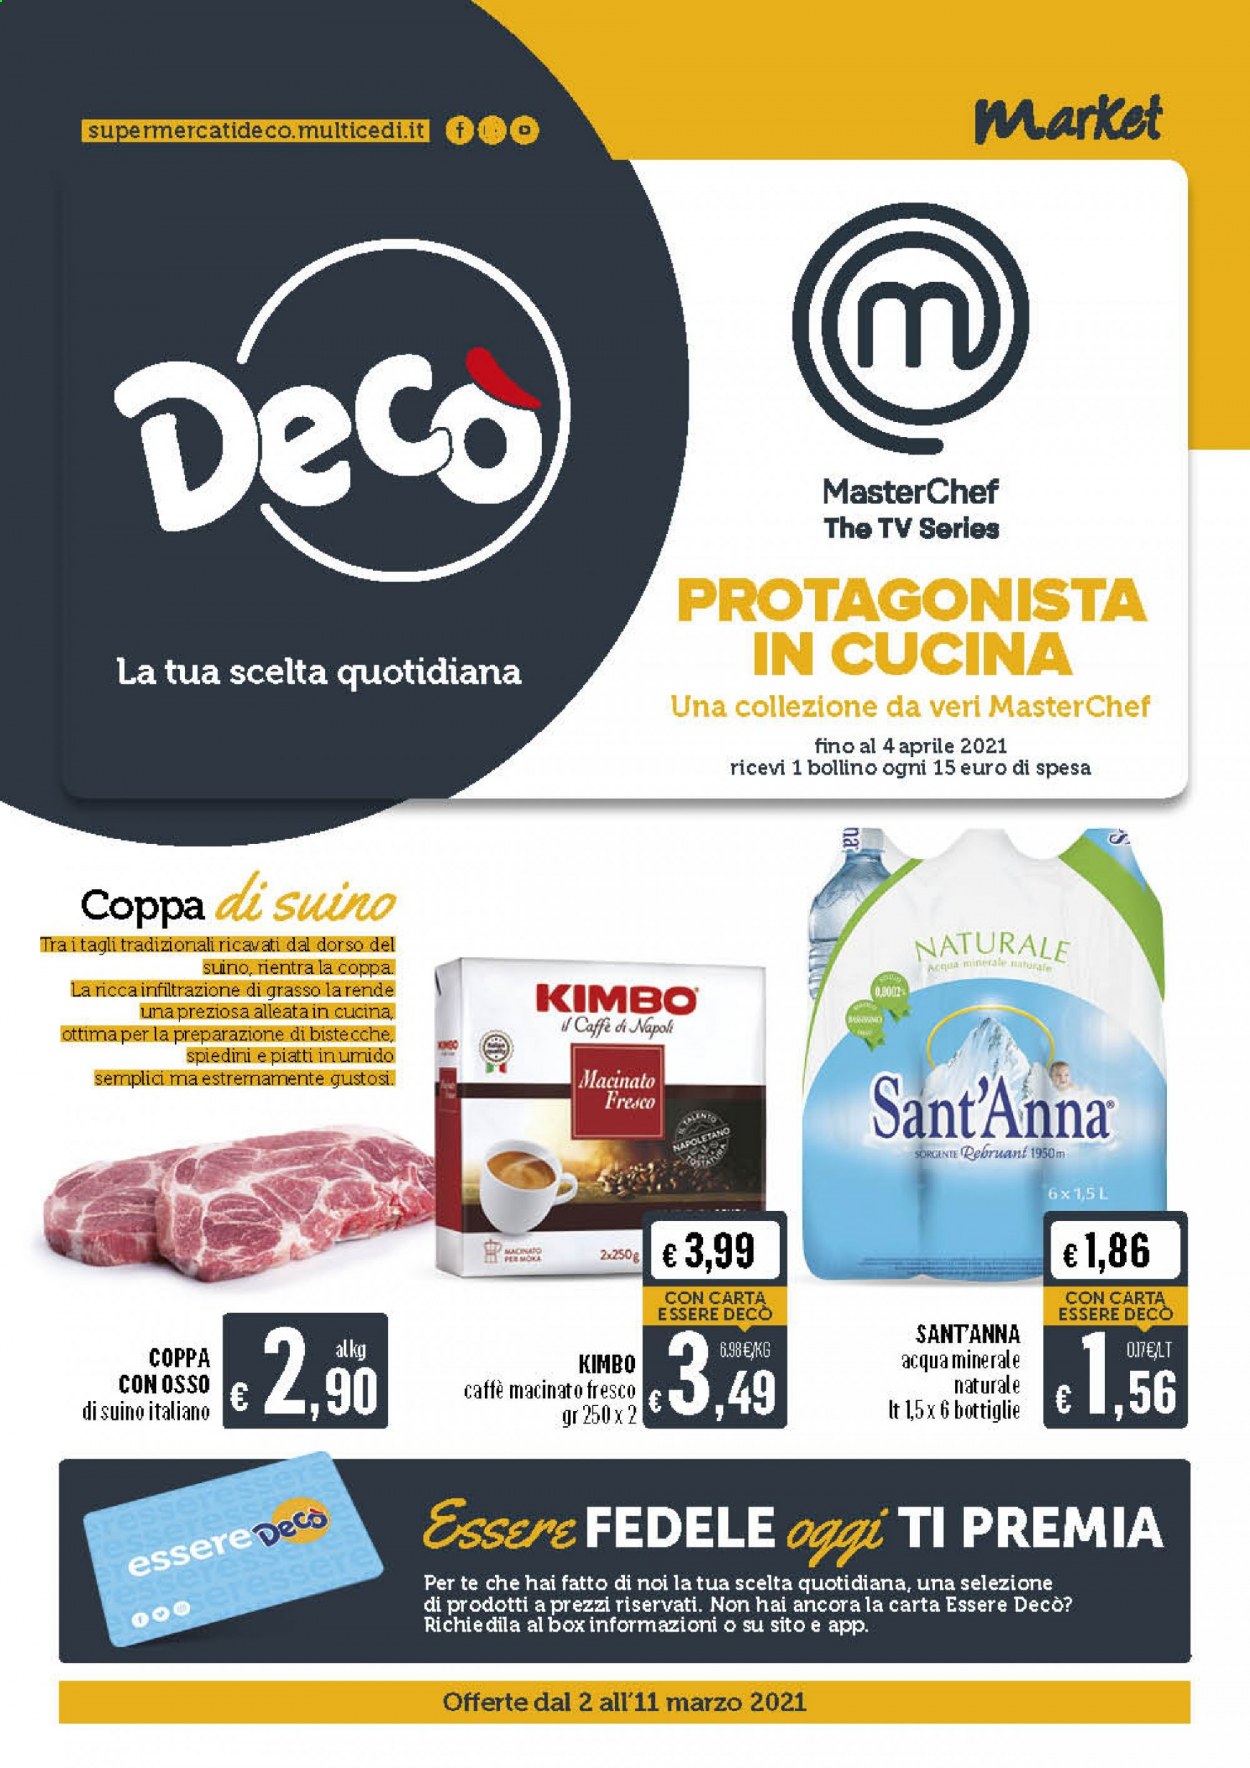 thumbnail - Volantino Deco - 2/3/2021 - 11/3/2021 - Prodotti in offerta - bistecca, coppa di suino, suino, spiedini, acqua minerale, Sant'Anna, caffè, Kimbo, caffè macinato, piatti. Pagina 1.